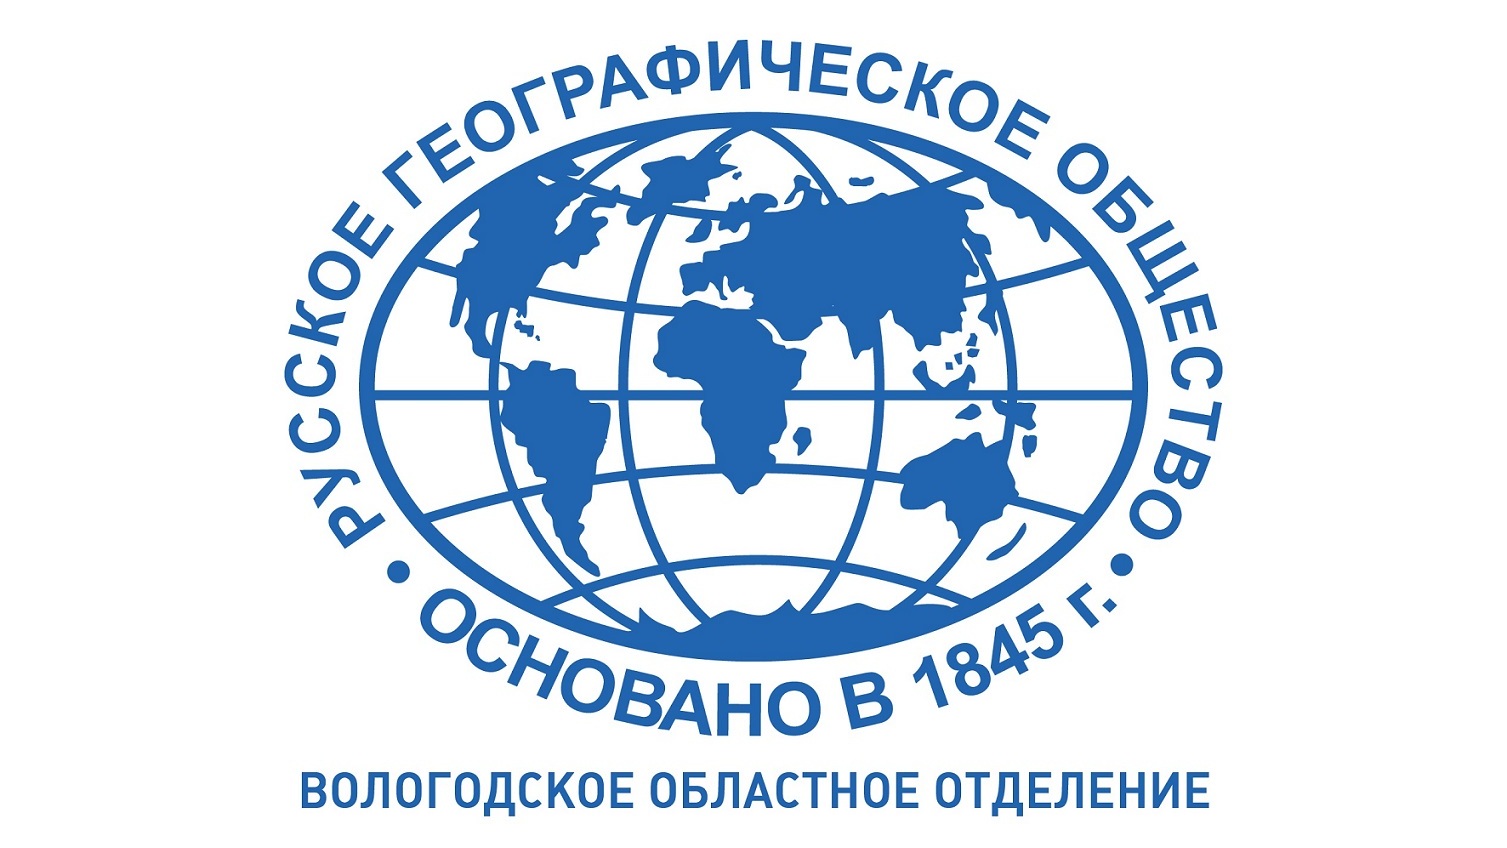 Вологодское региональное отделение Русского географического общества входит в десятку лучших в стране